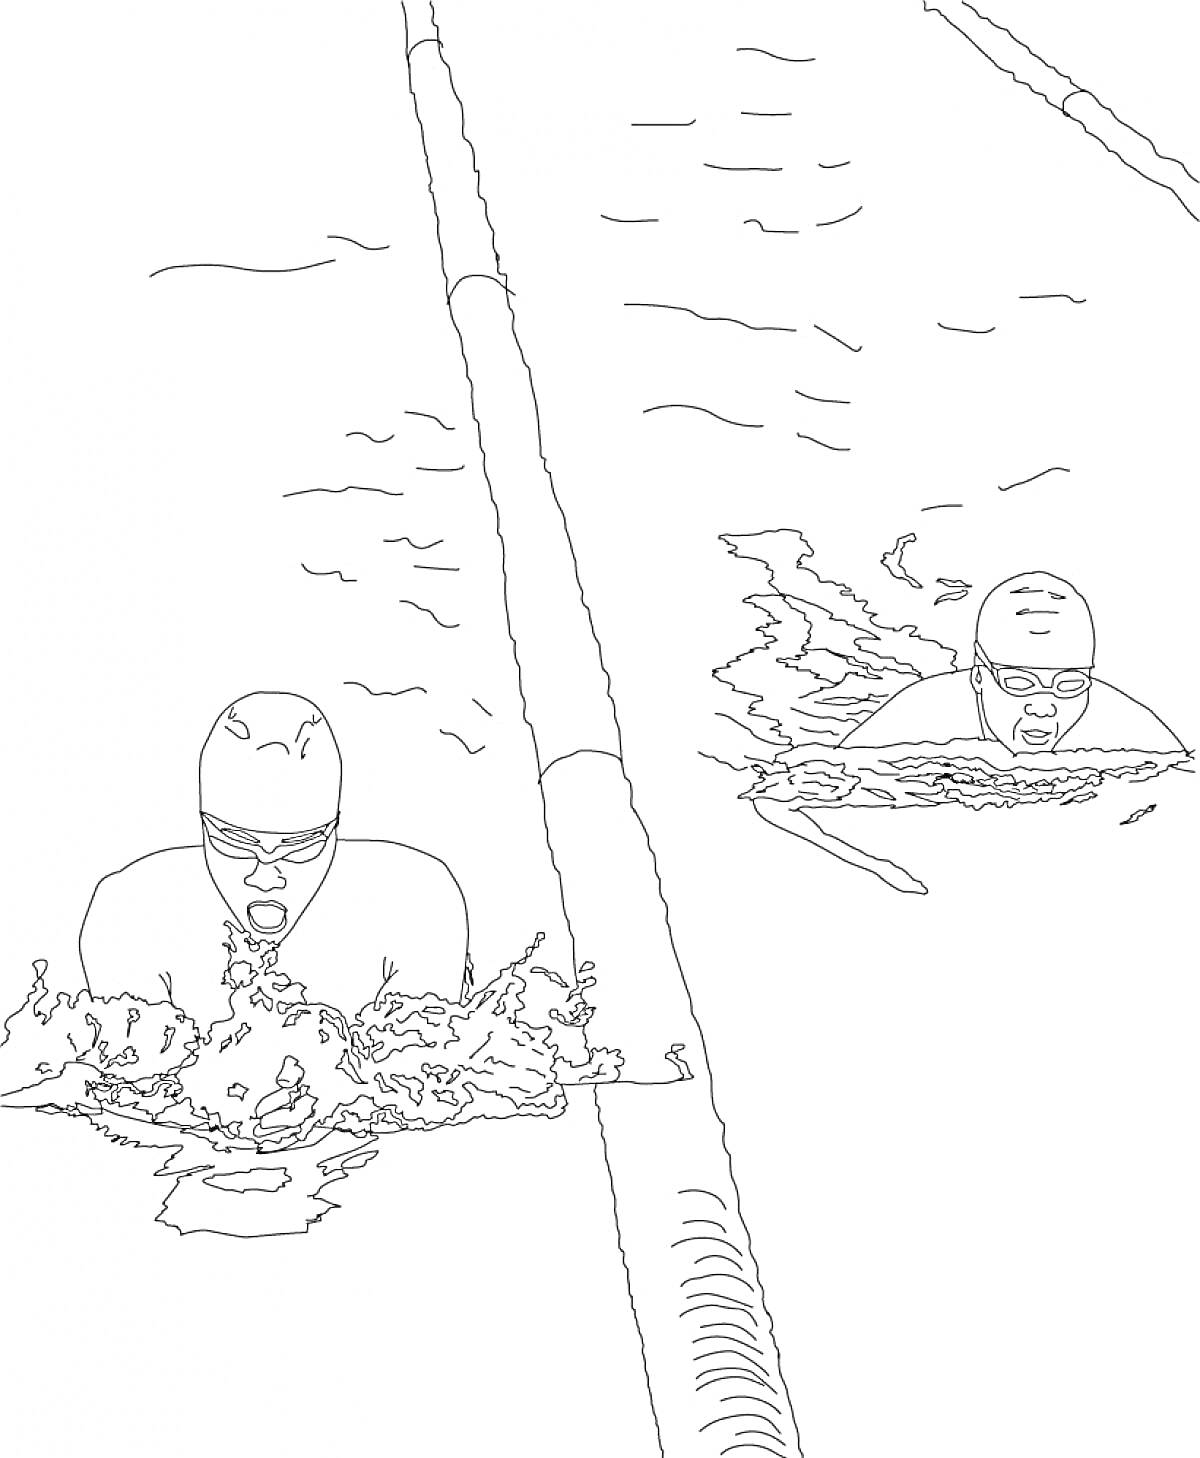 Раскраска Пловцы во время соревнований, один пловец на переднем плане, плывущий брассом, второй пловец на заднем плане, дорожка бассейна разделена буями, брызги воды вокруг пловцов